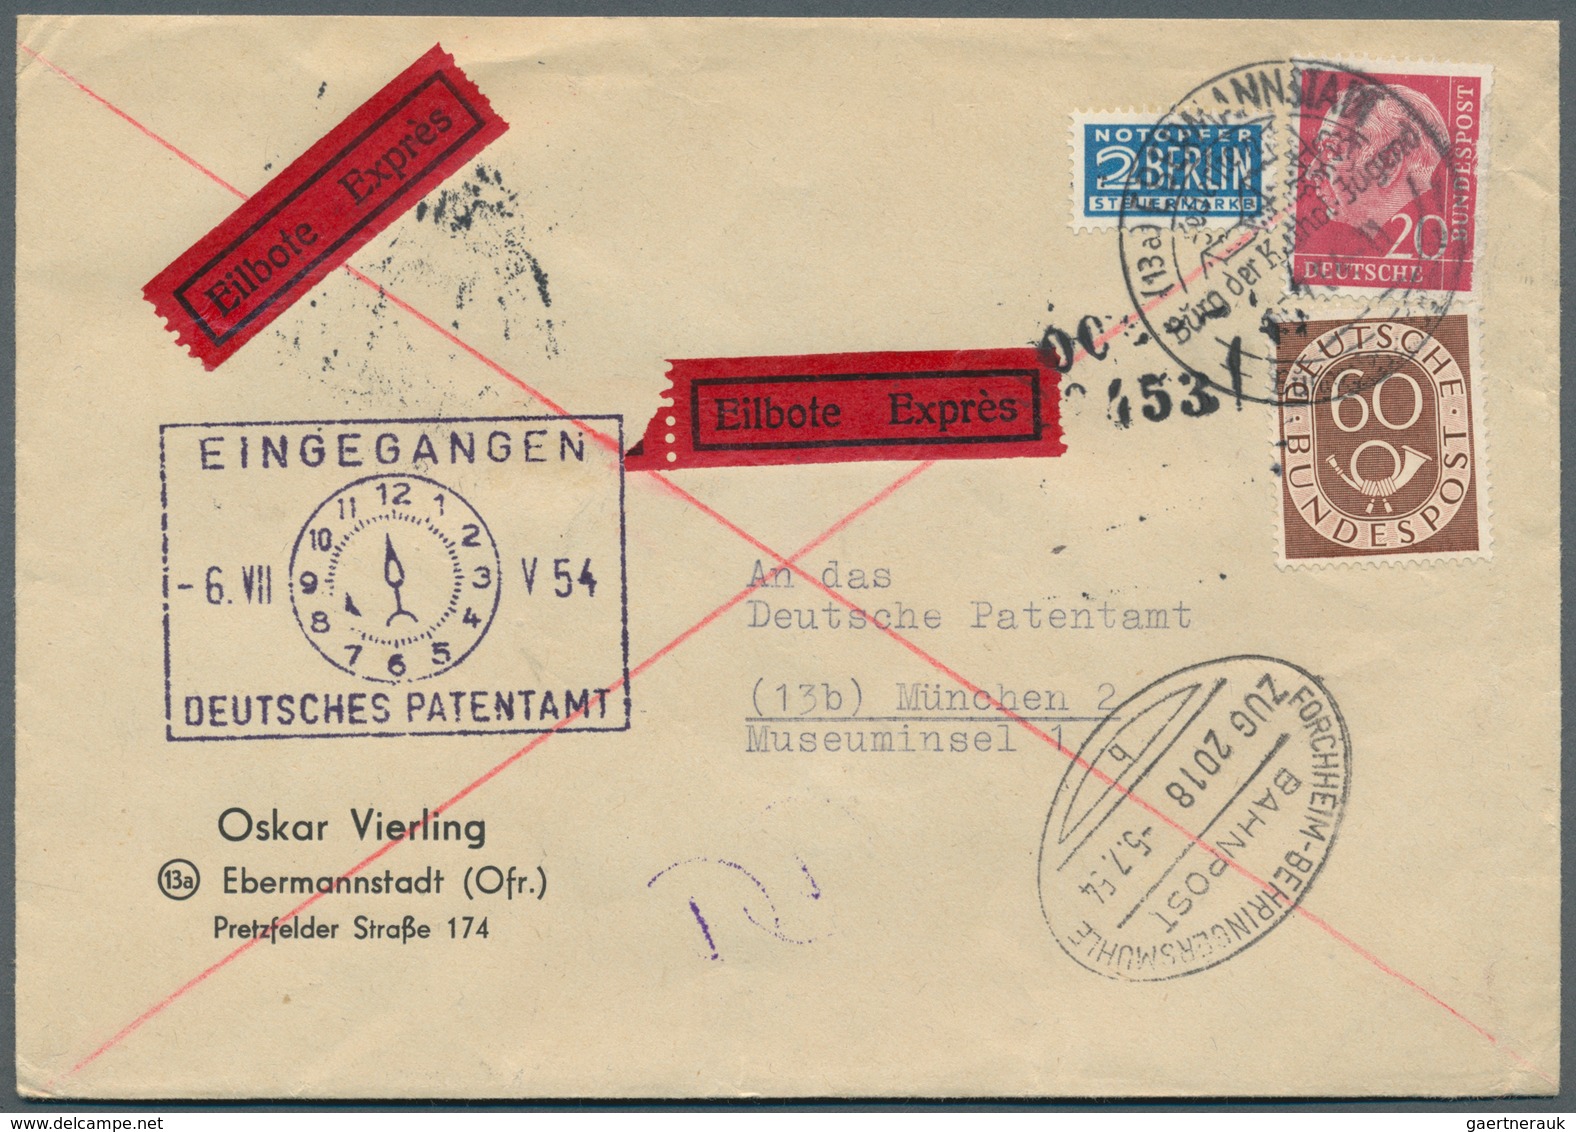 32726 Bundesrepublik Deutschland: 1950/1970 (ca.), vielseitiger Bestand von ca. 830 Briefen/Karten mit dek